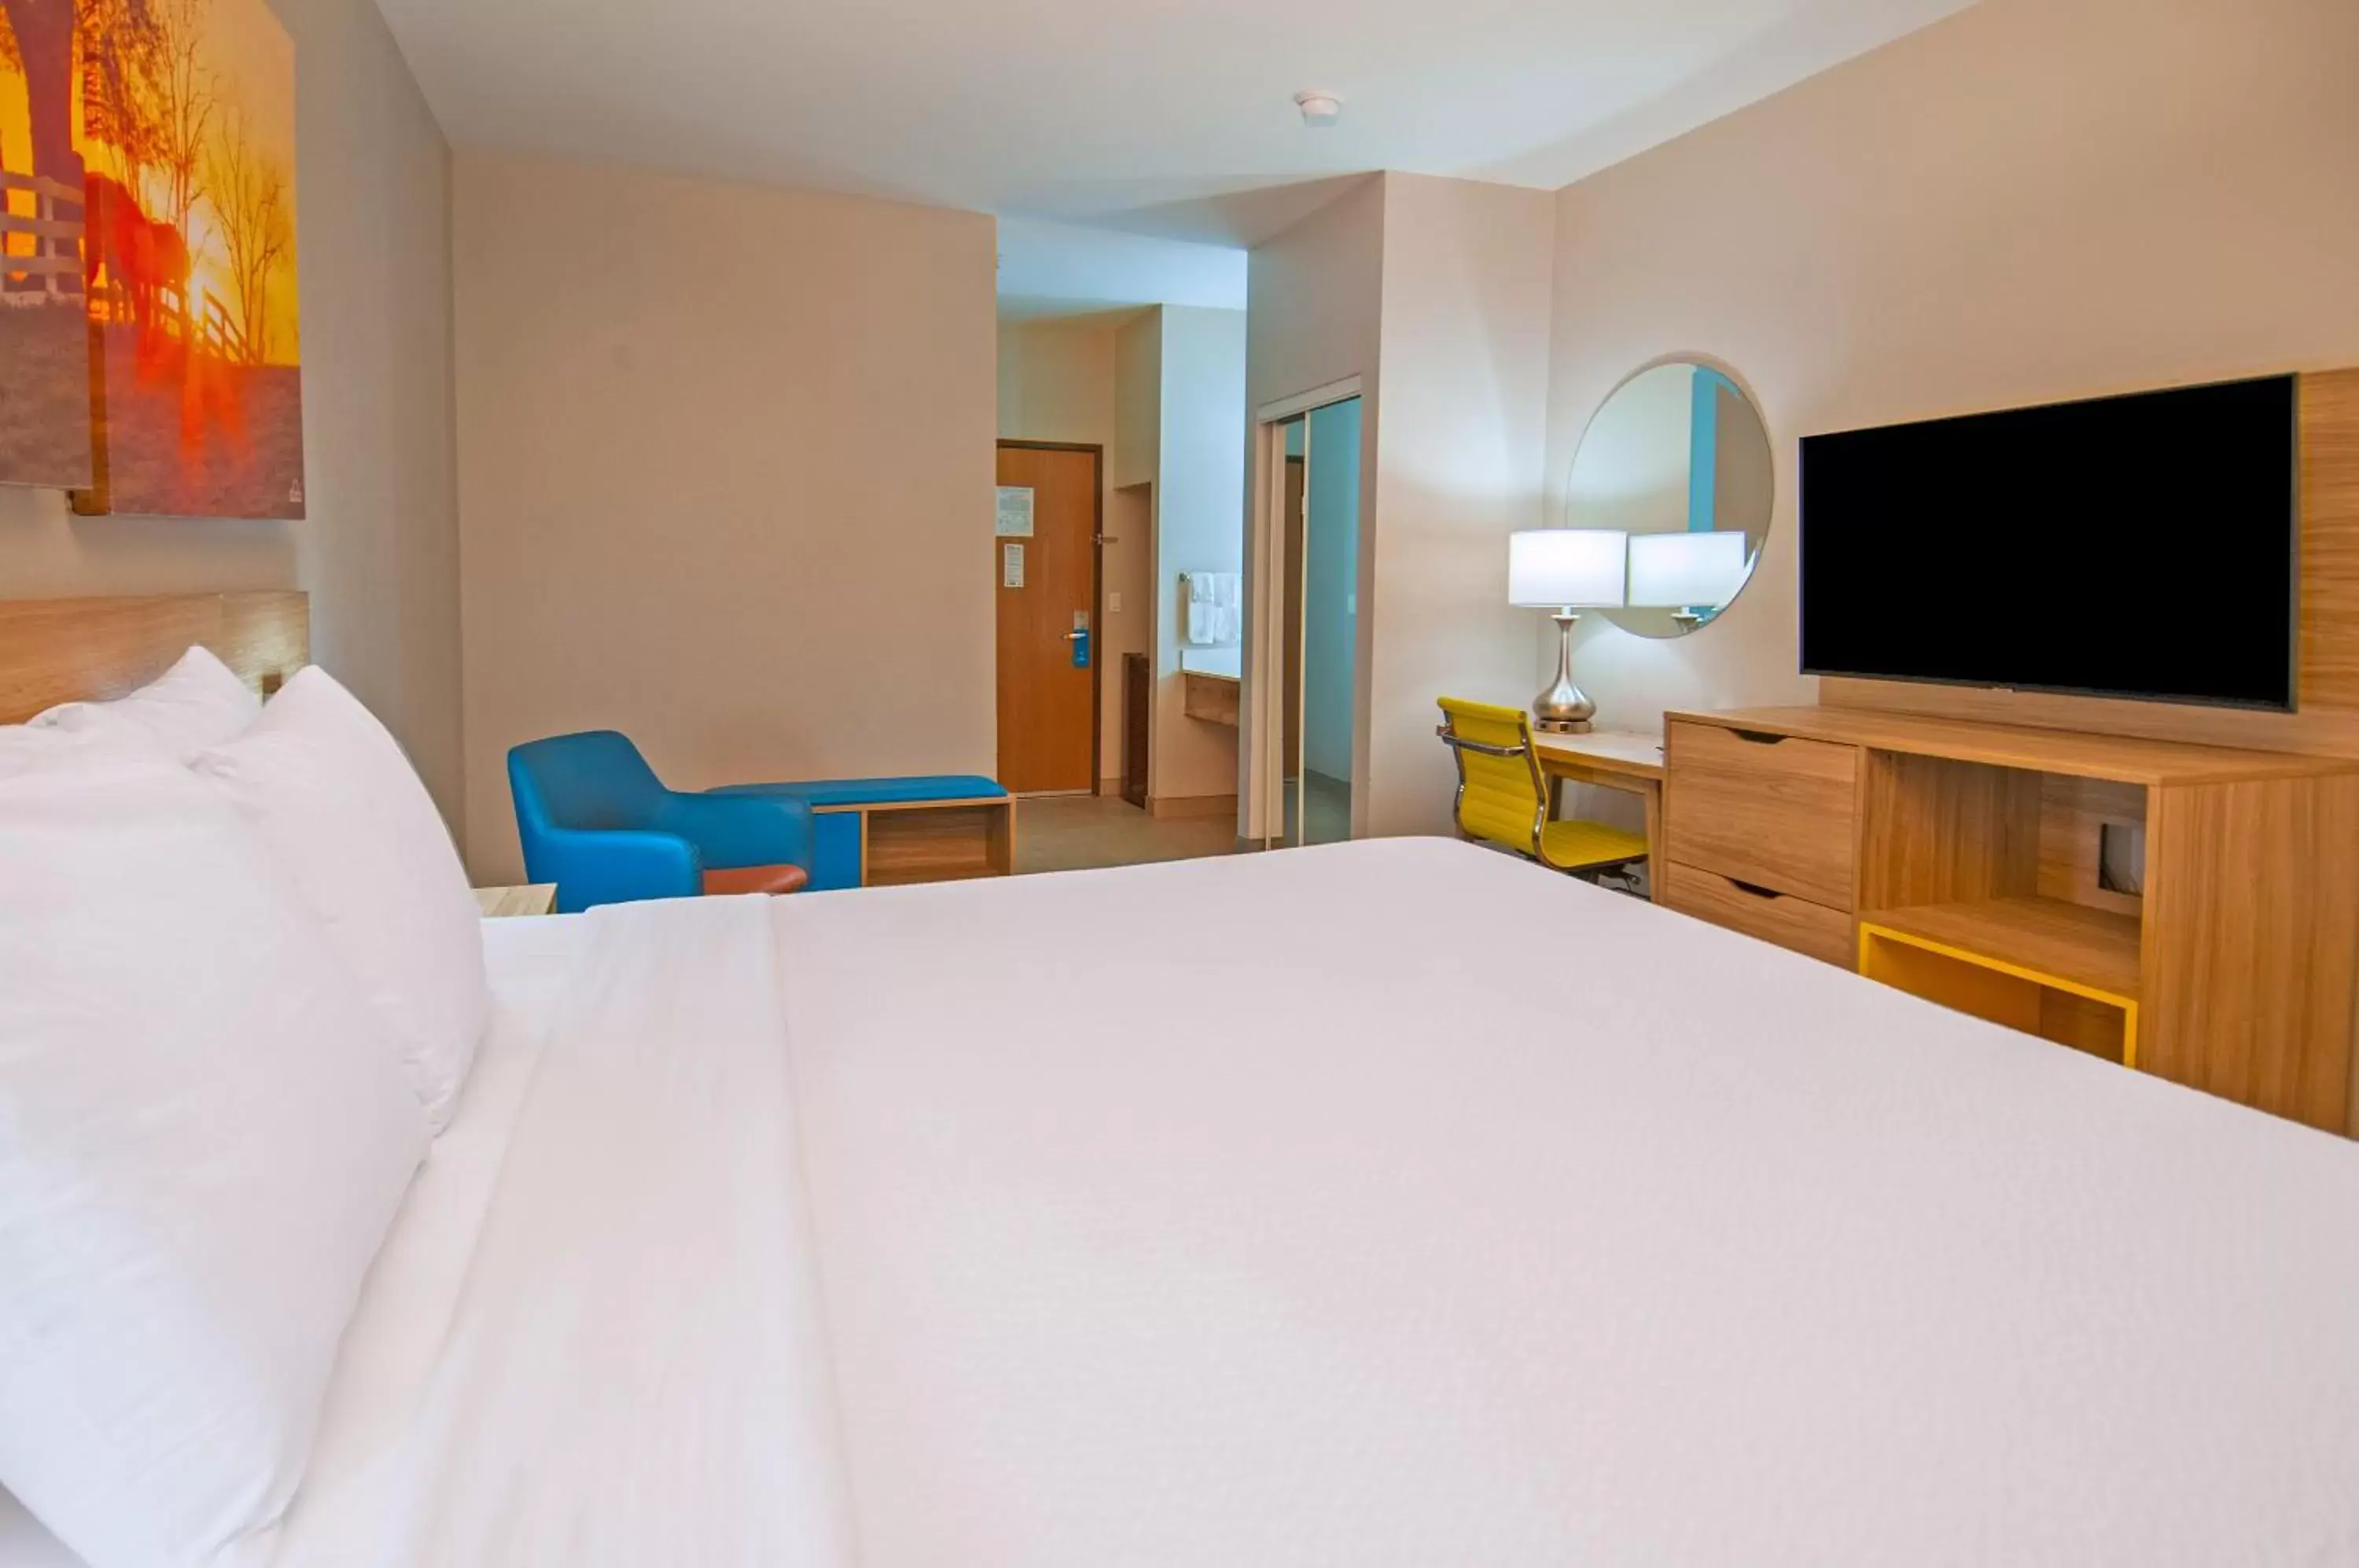 Bedroom, Bed in Days Inn by Wyndham Suites San Antonio North/Stone Oak